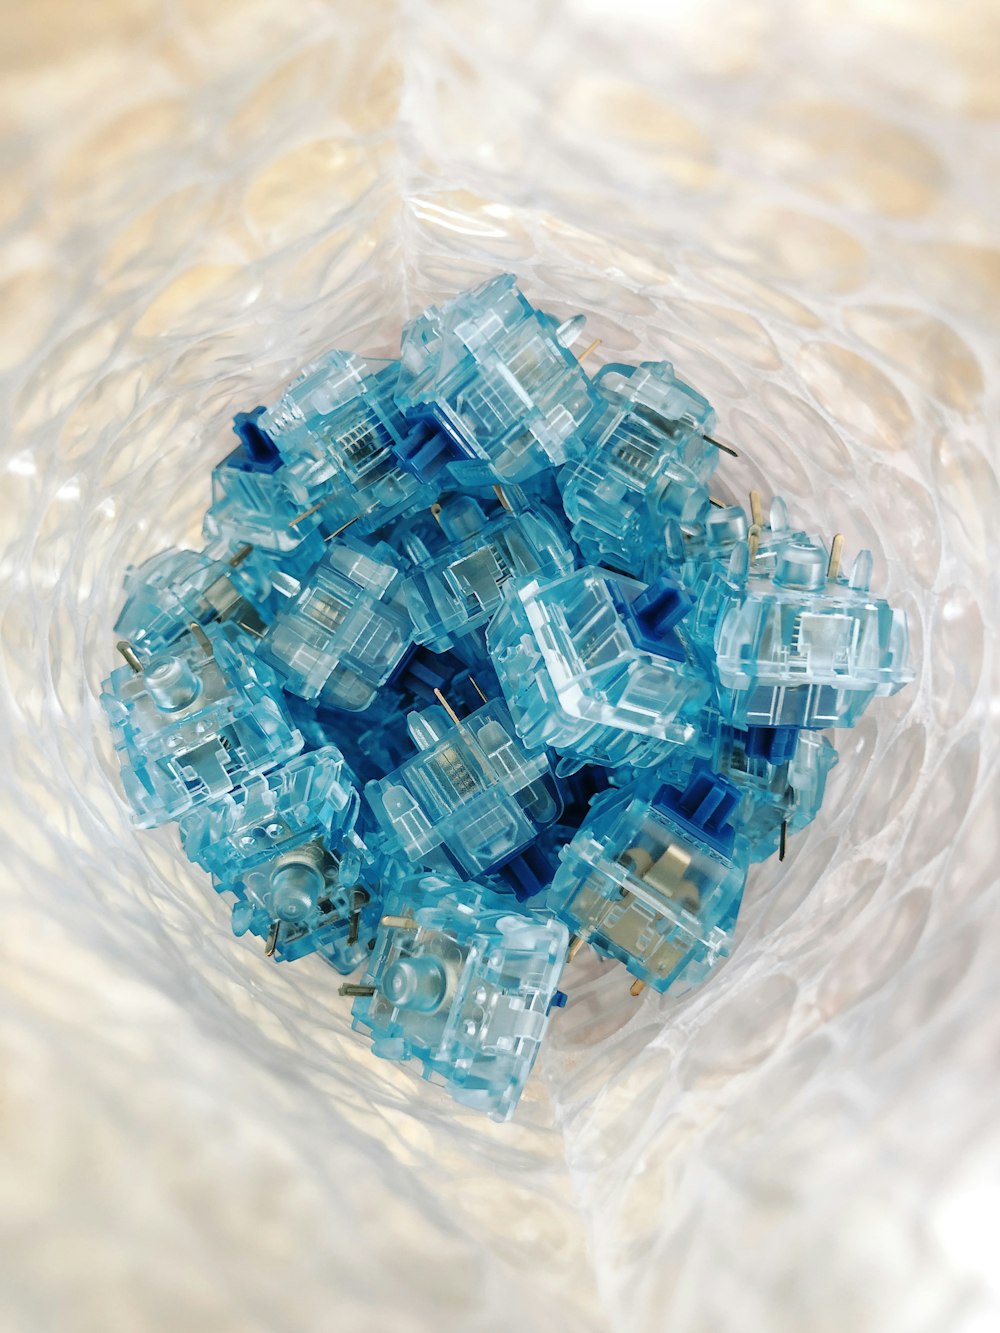 Bloques de juguete de plástico azul y blanco en el agua